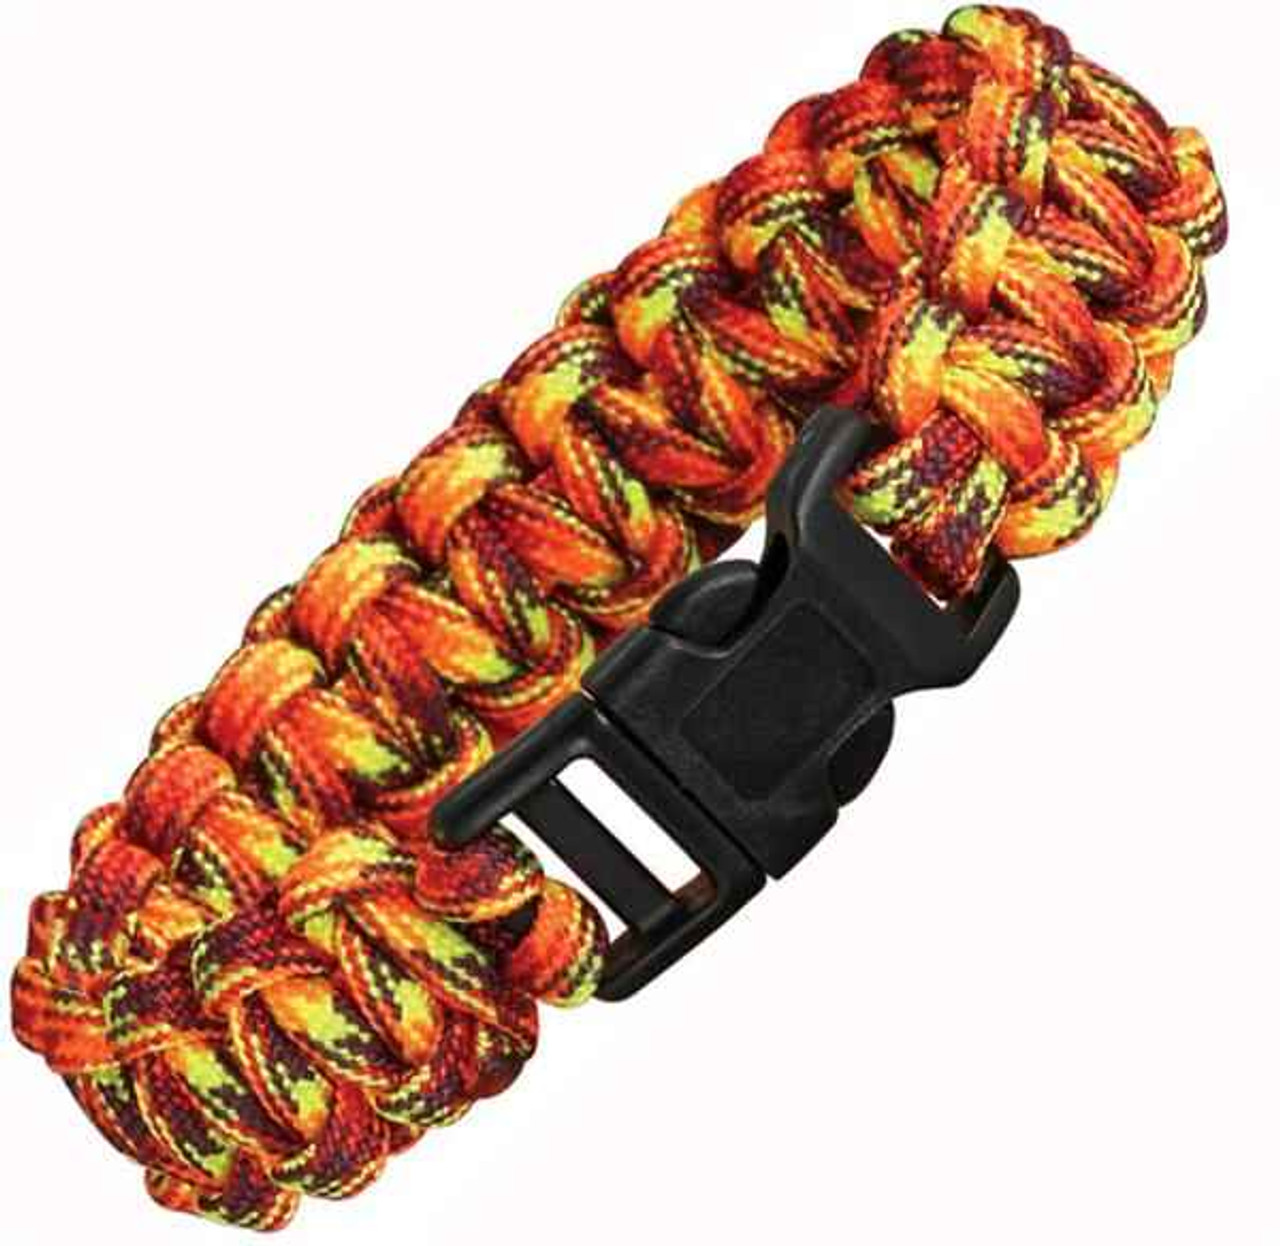 Knotty Boys Fire Survival Bracelet - Single Weave - Large Size